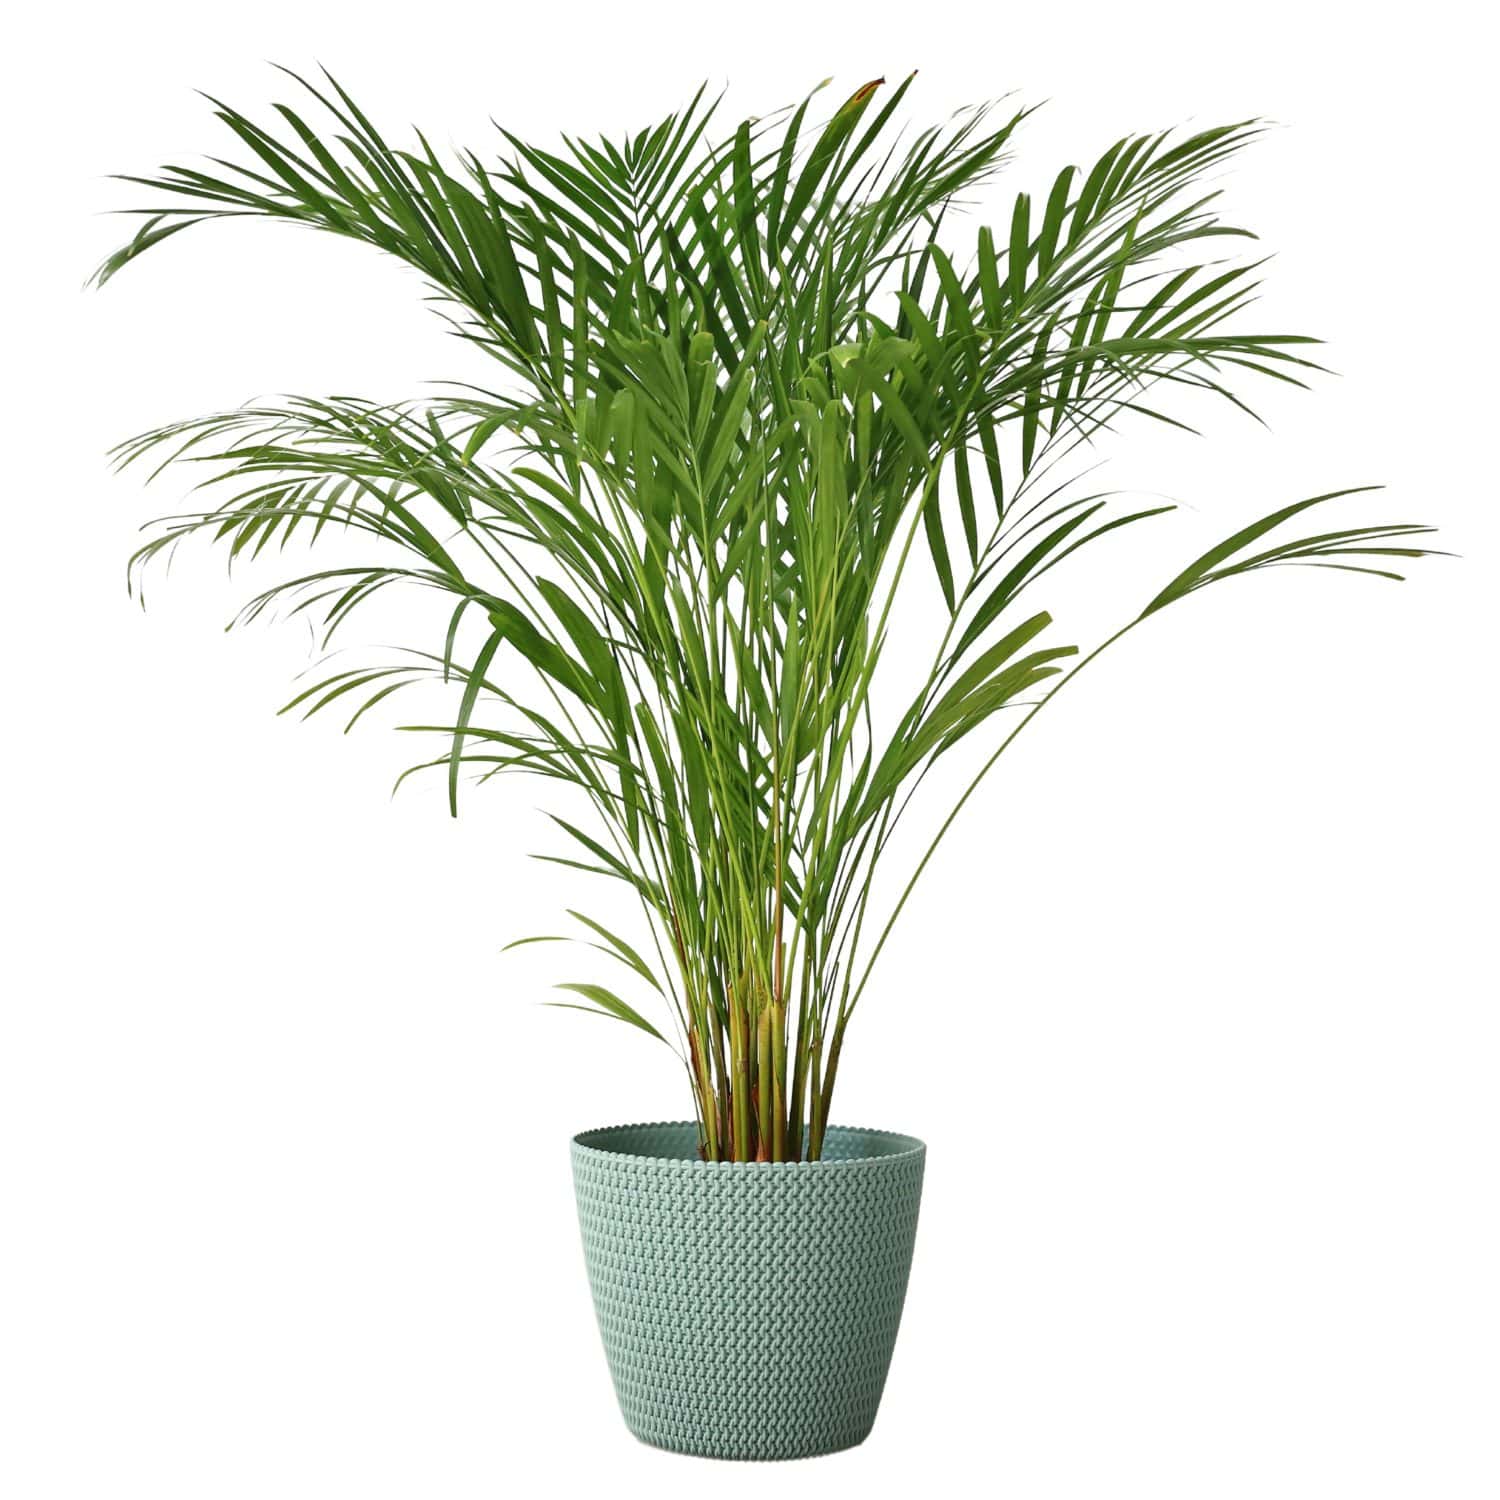 Palma Areca decorativa isolata su sfondo bianco. Pianta Dypsis lutescens, conosciuta anche come palma di canna dorata, palma areca, farfalla gialla.  Foglie di palma verdi nella foresta tropicale.  Crisalidocarpo 